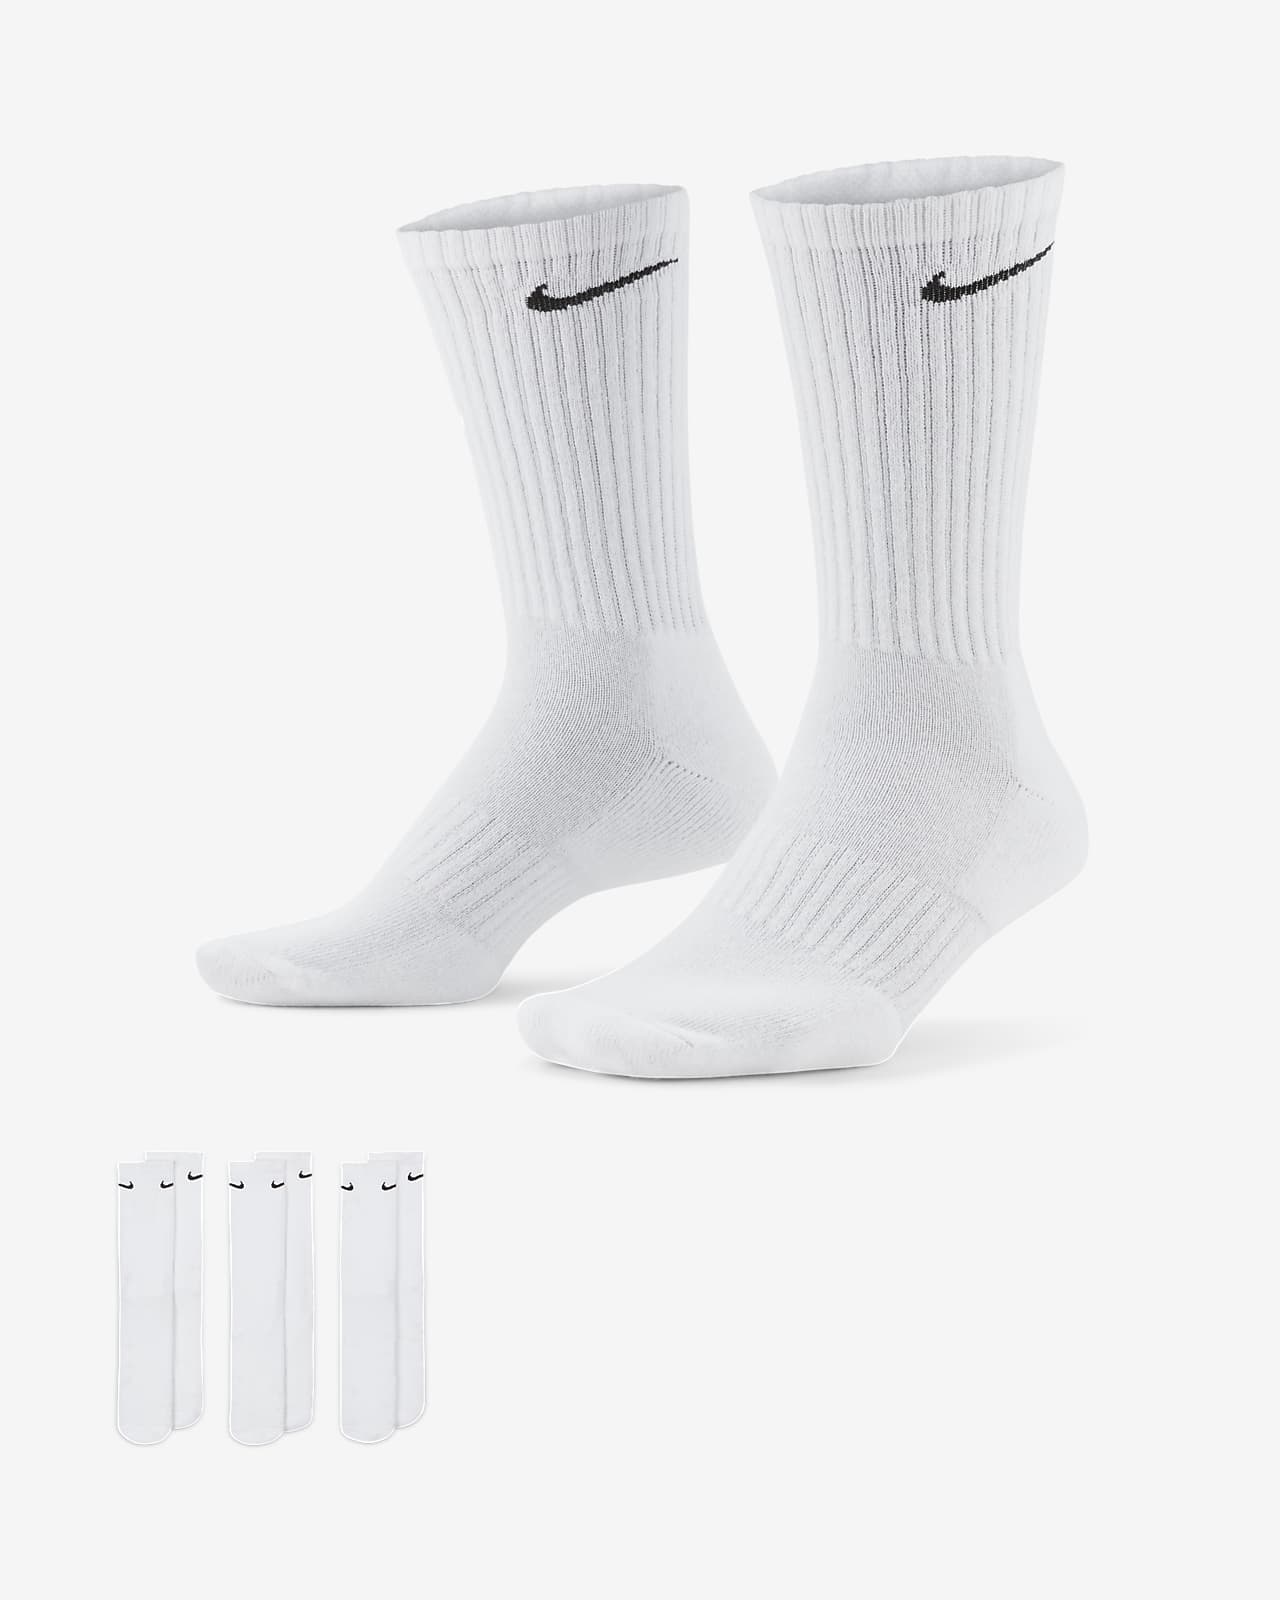 Klasyczne skarpety treningowe Nike Everyday Cushioned (3 pary)